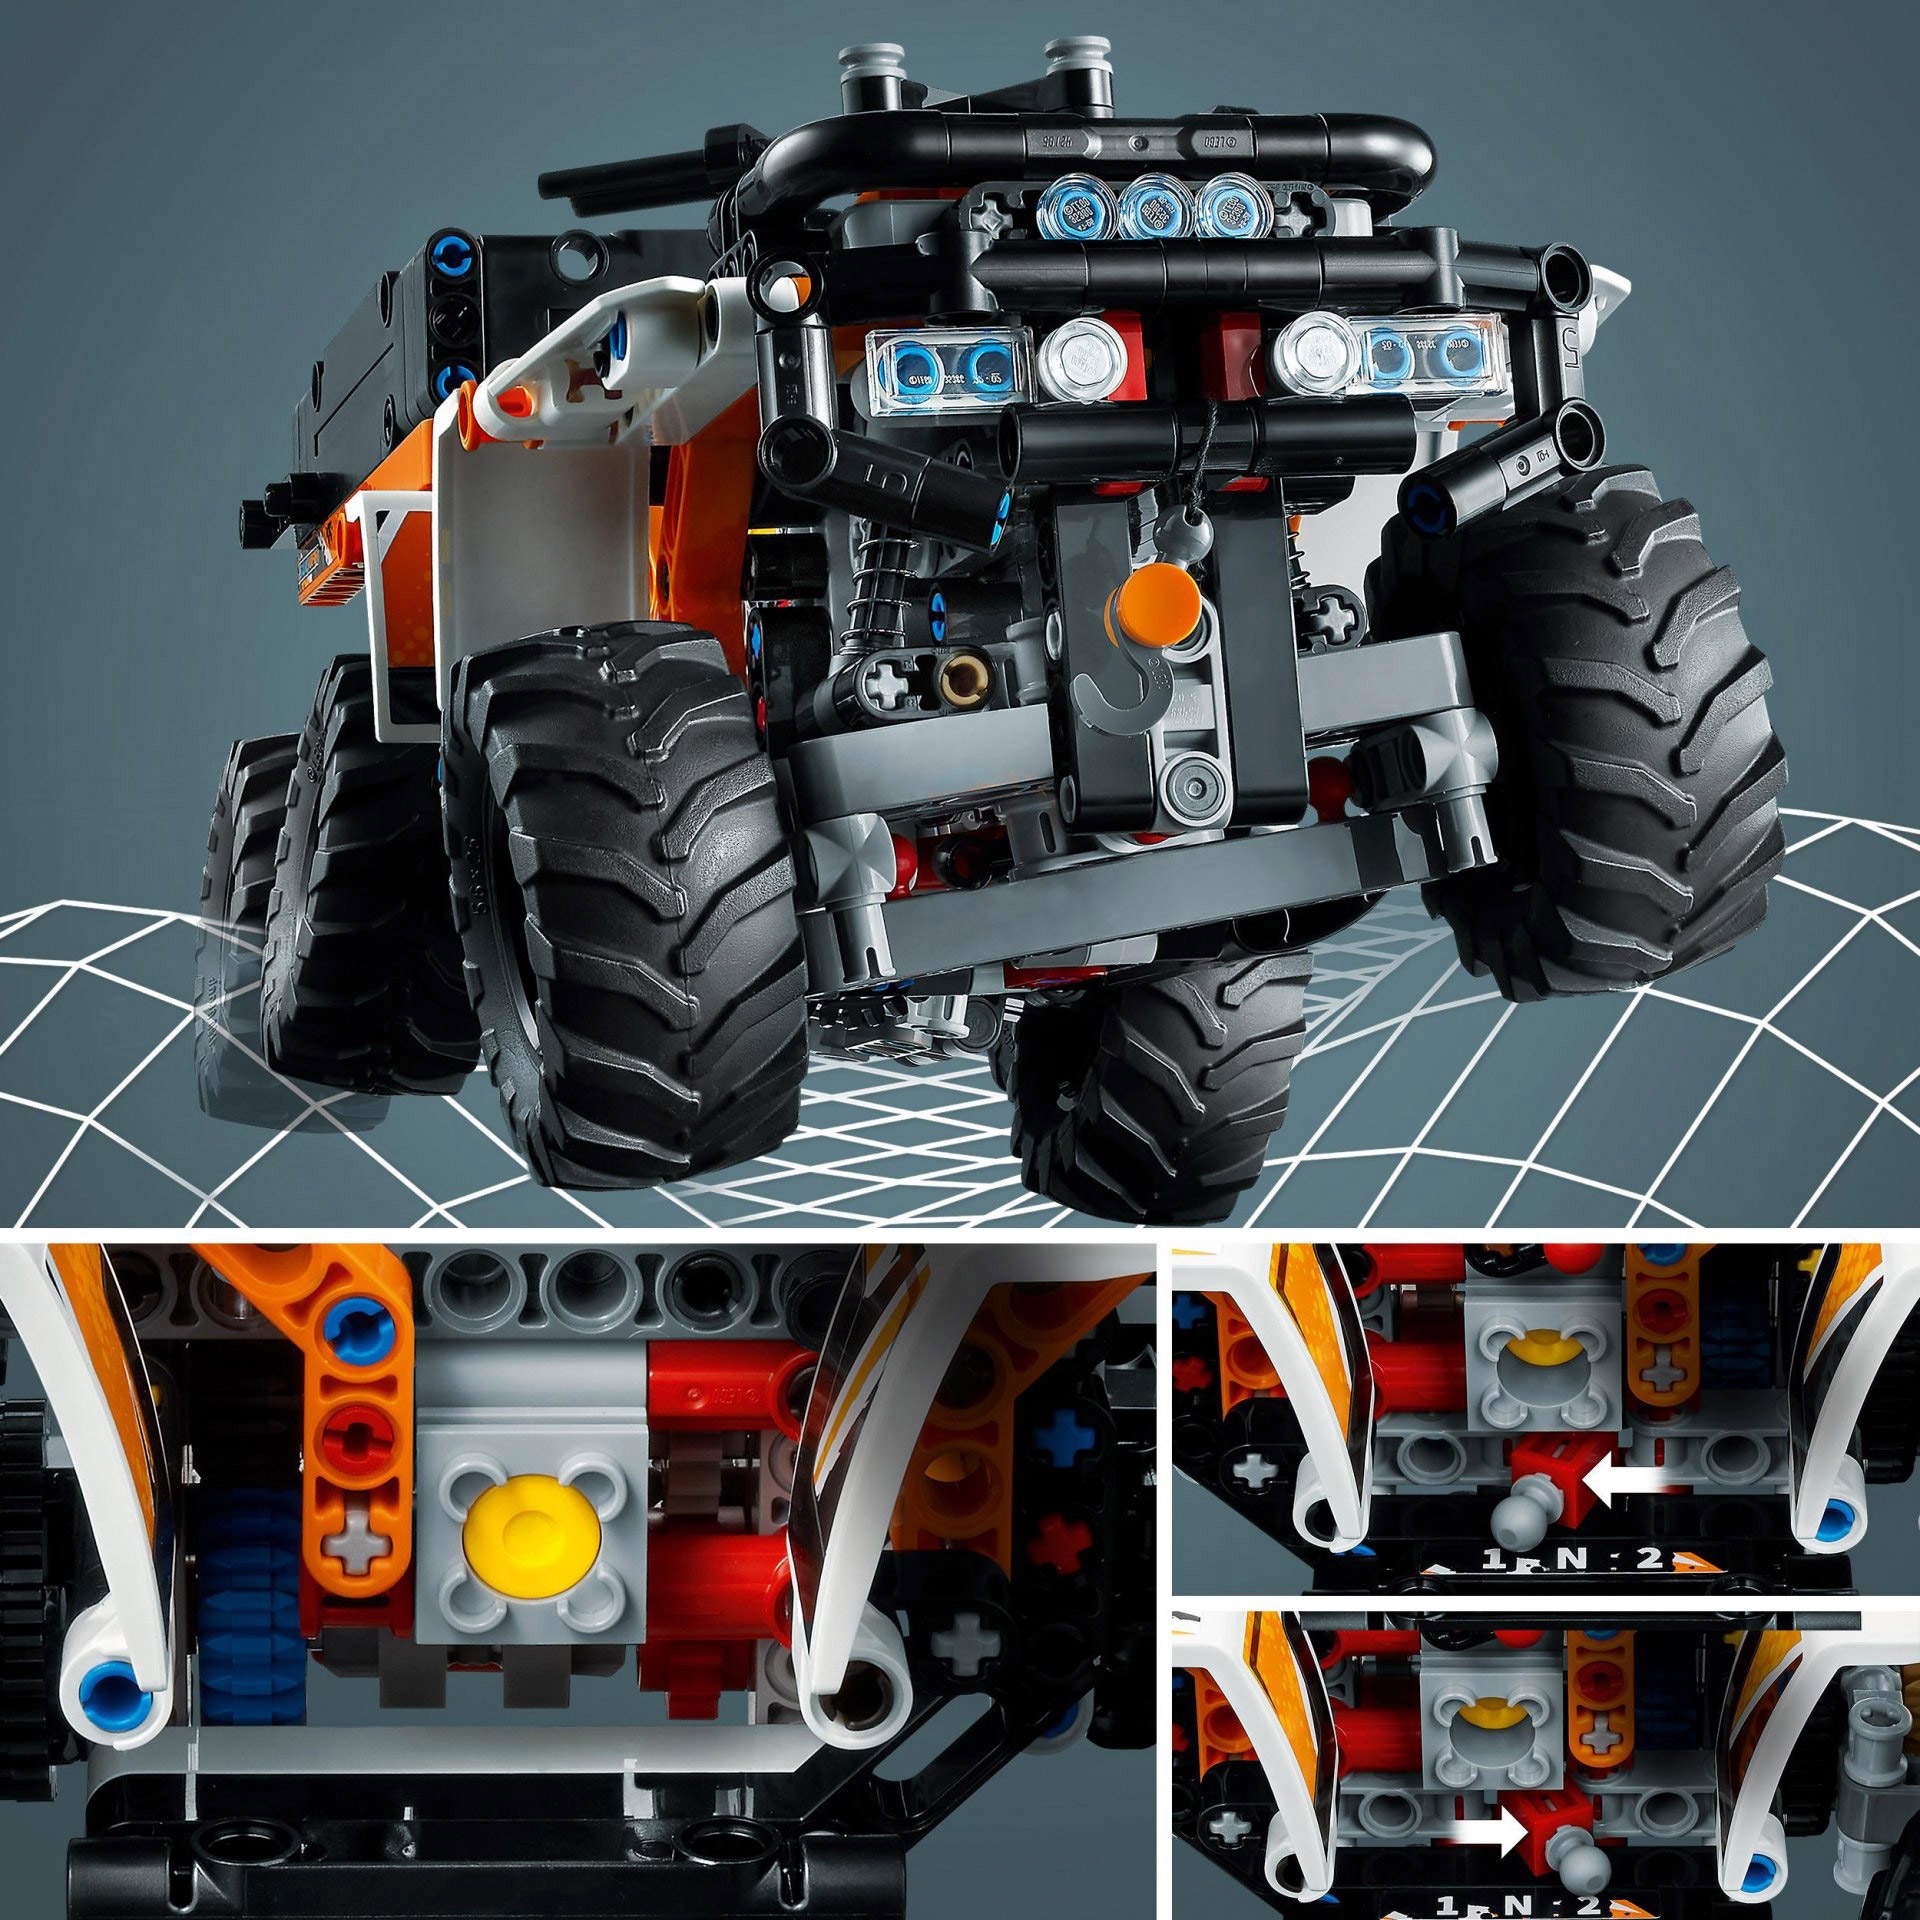 LEGO 42139 Technic Fuoristrada, Camion Giocattolo per Bambini e Bambine dai 10 A 42139, , large